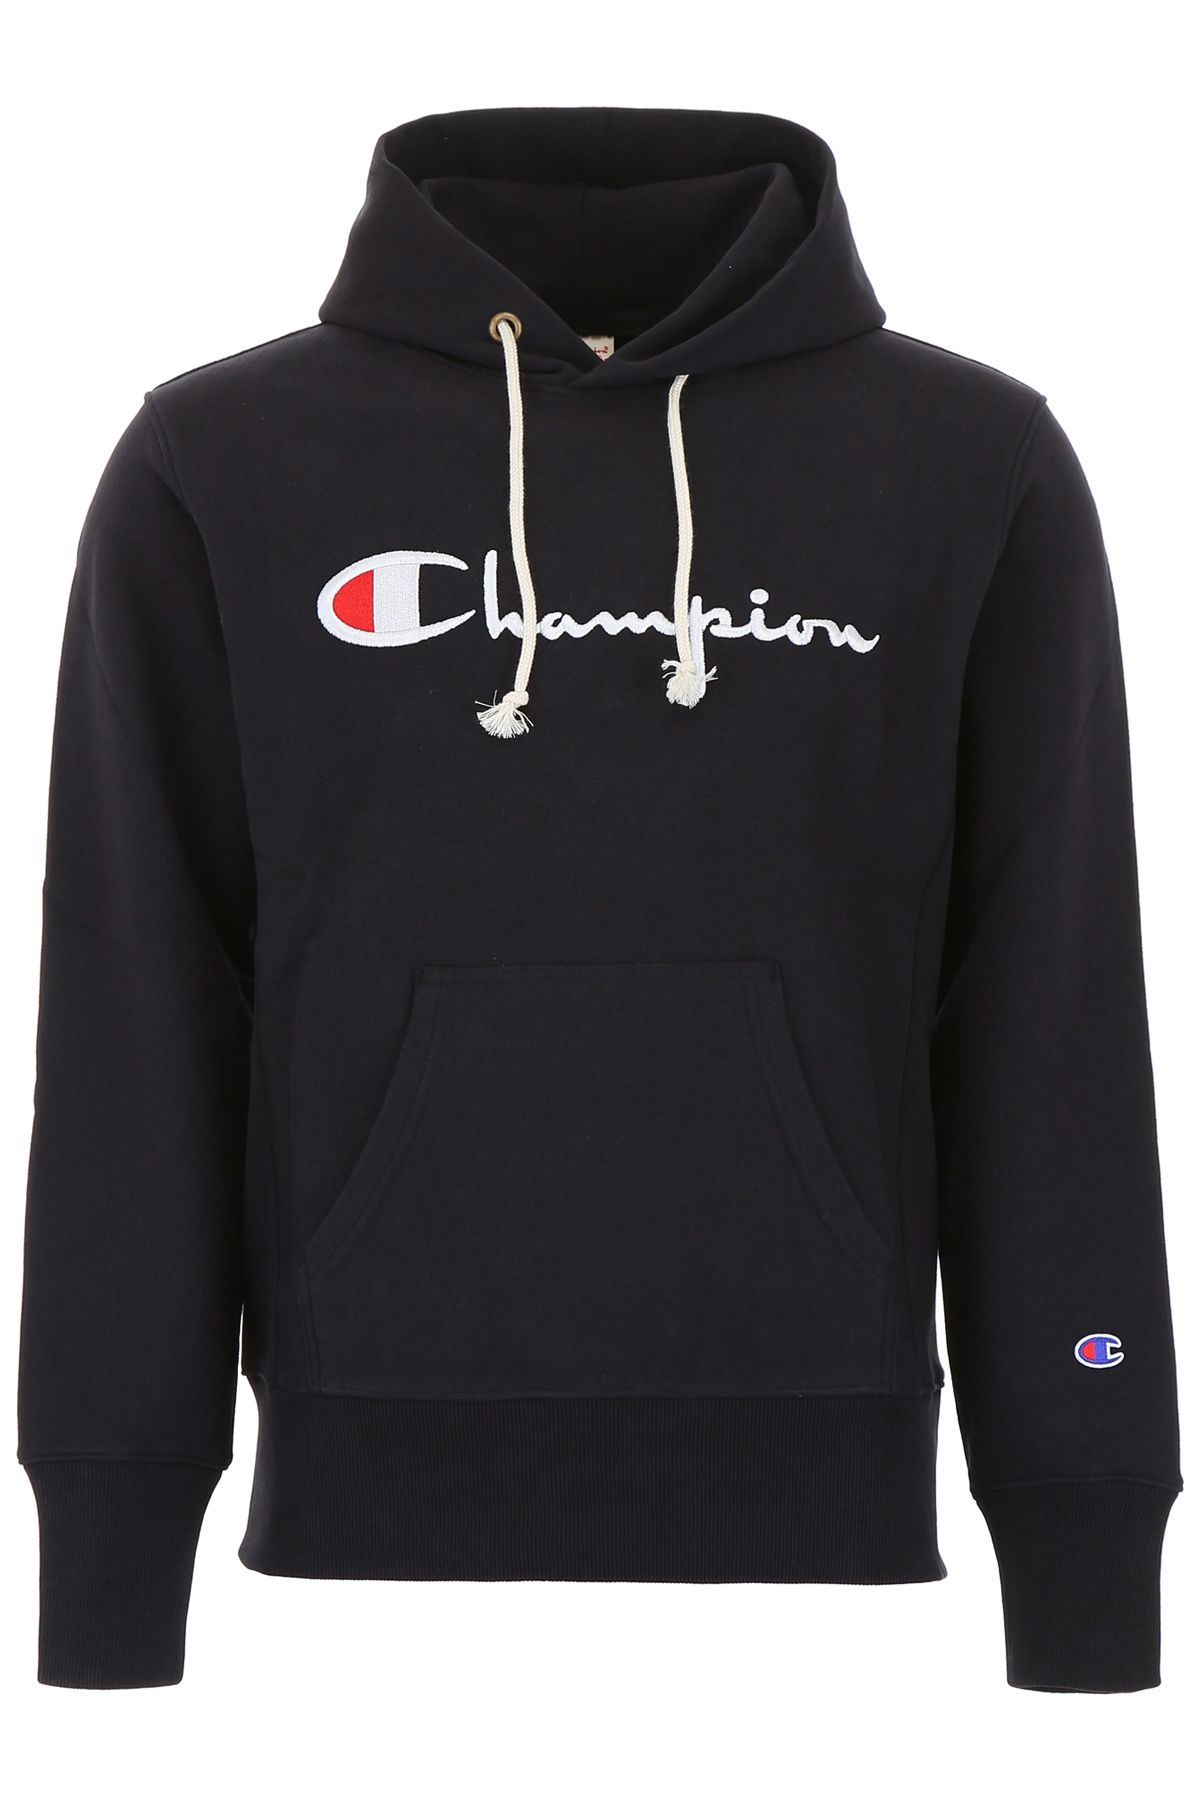 Champion Champion Large Logo Hoodie - NBK BLACK (Black) - 10922940 ...